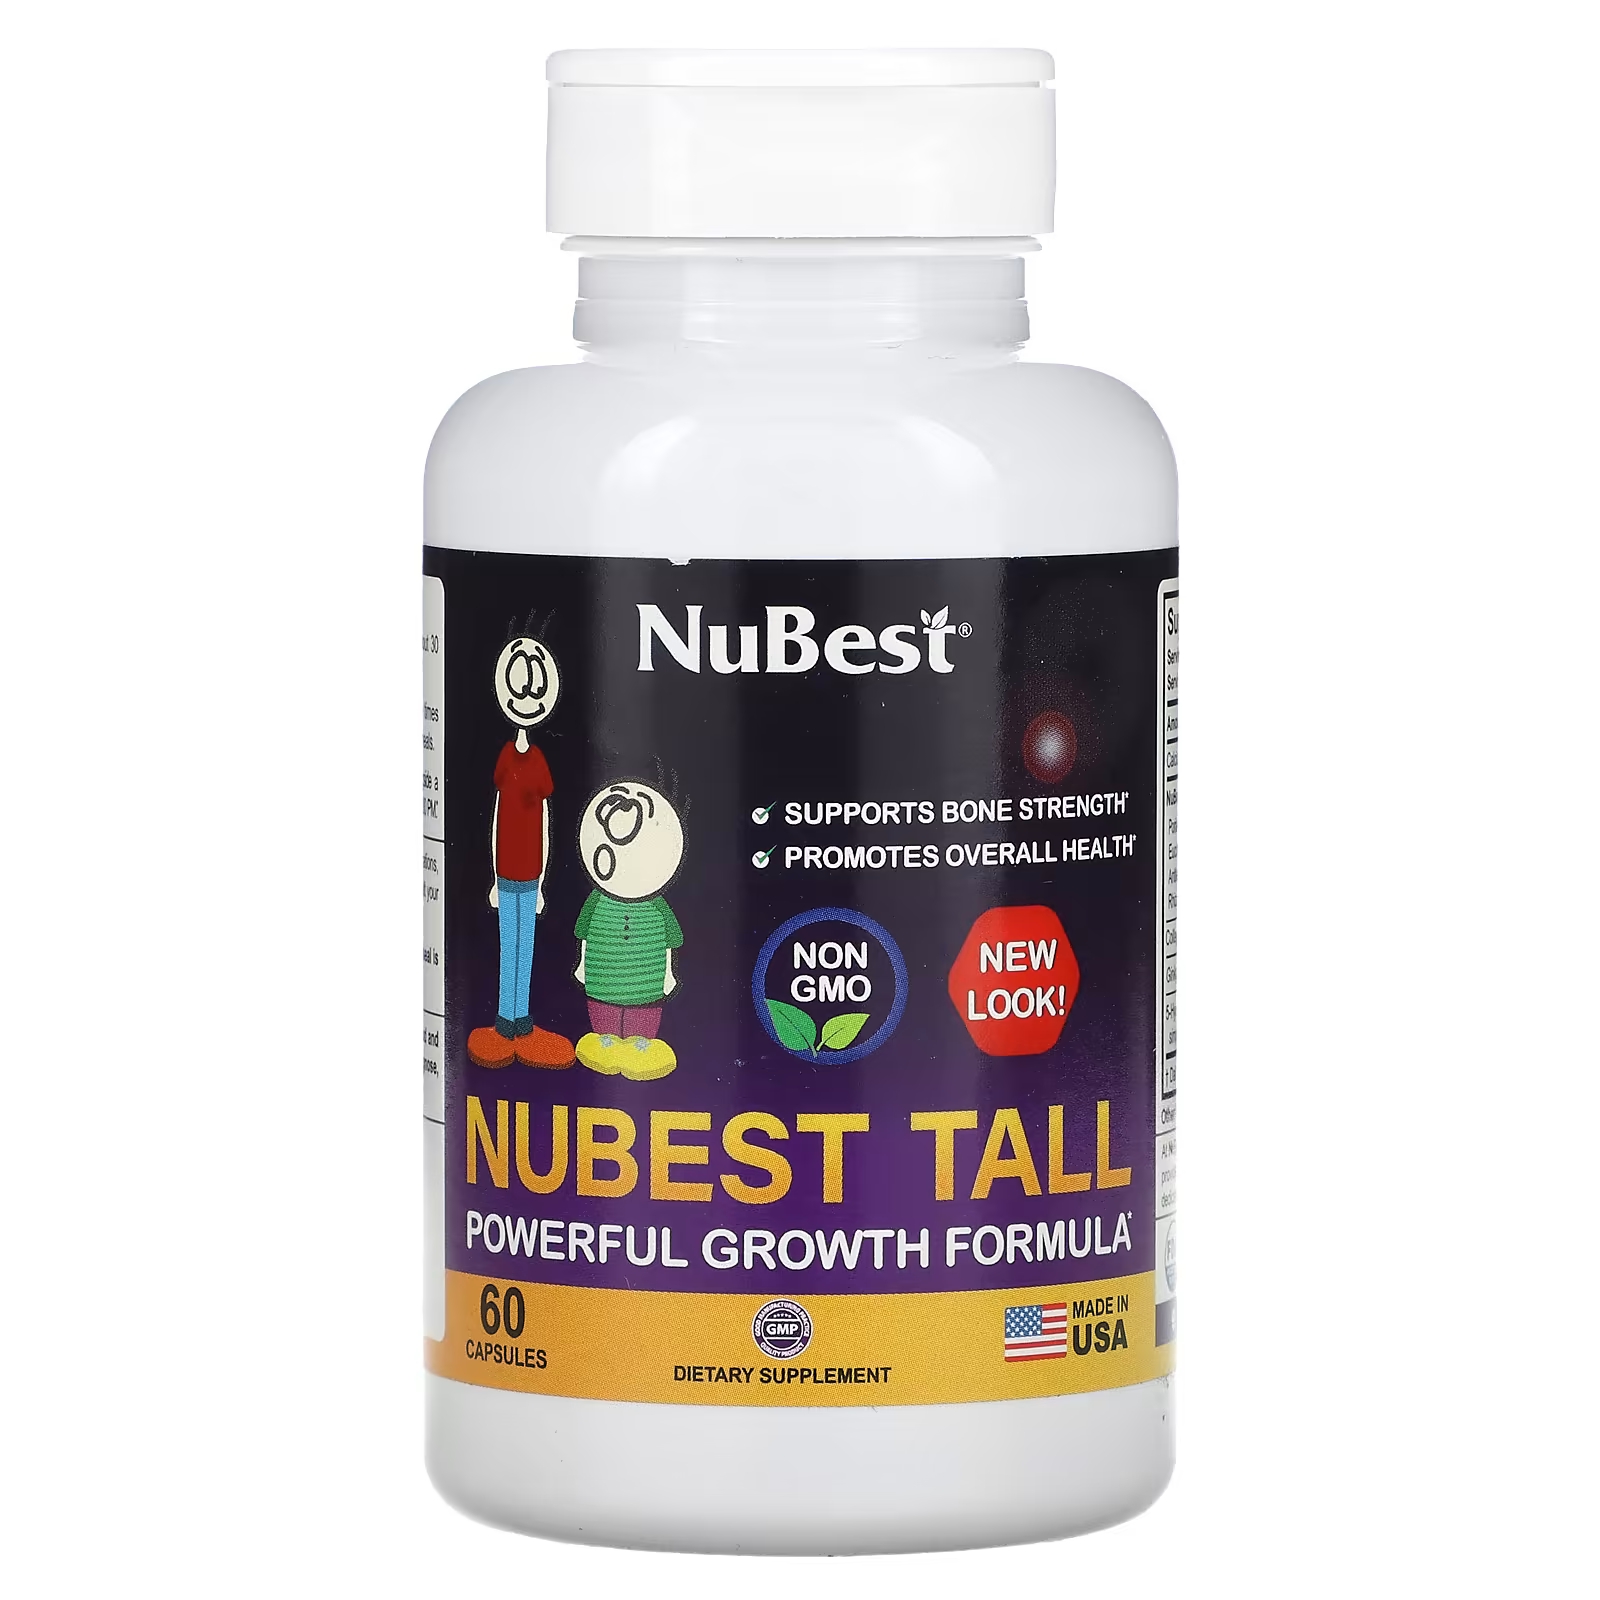 Пищевая добавка NuBest формула мощного роста, 60 капсул